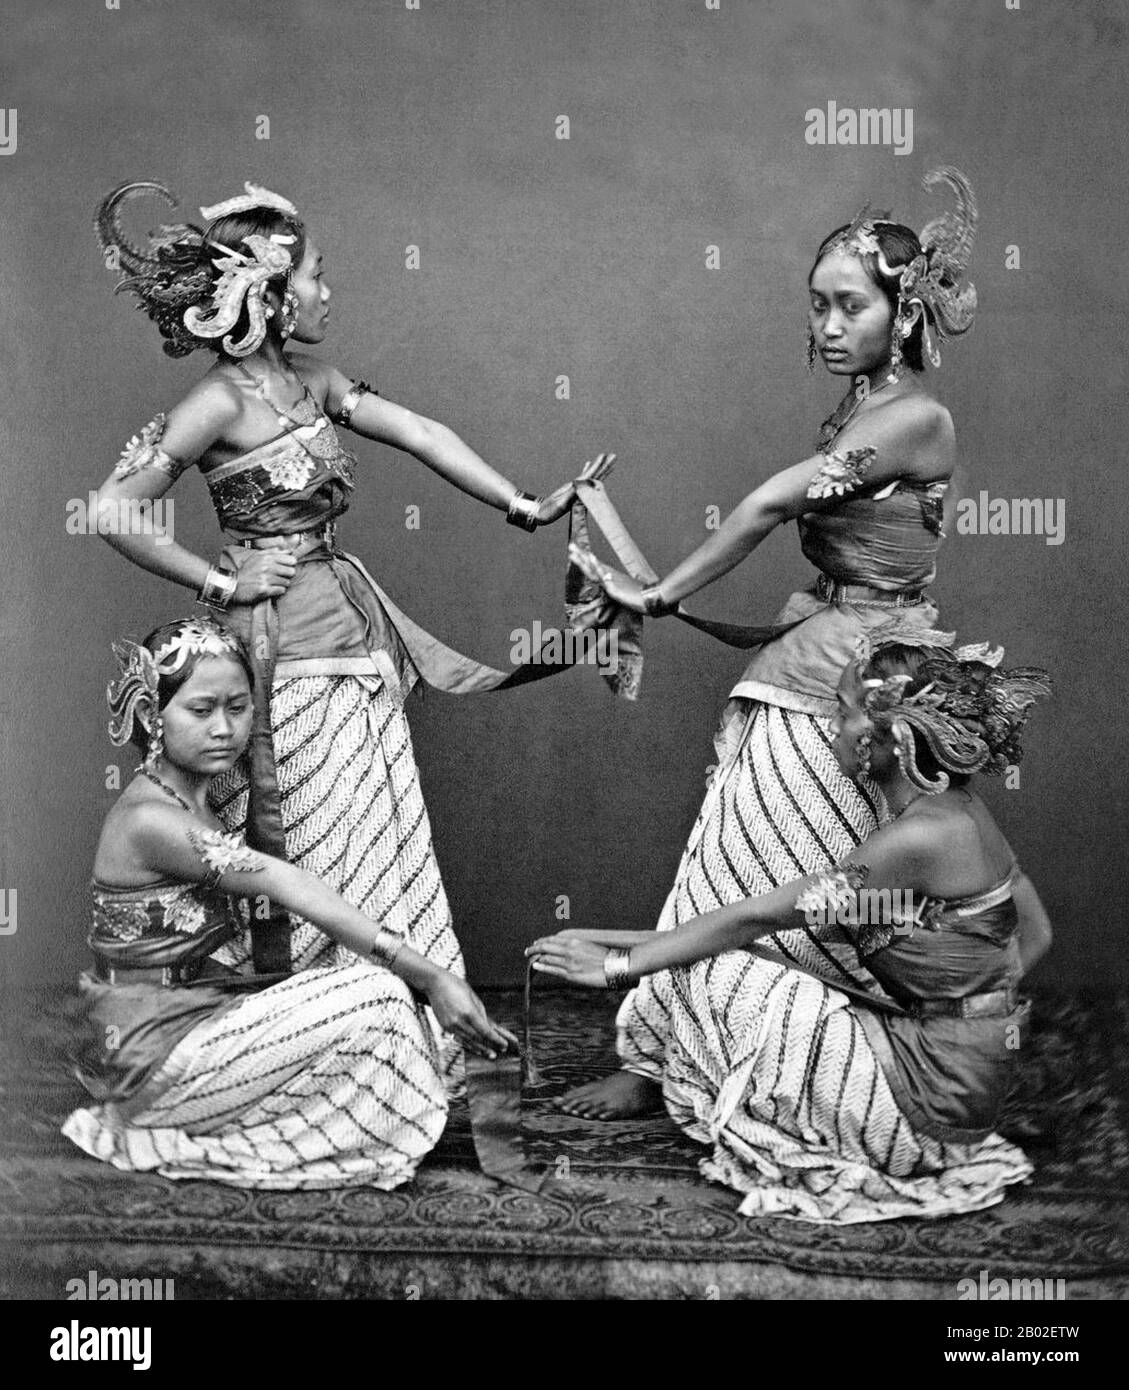 La danza giavanese comprende le danze e le forme d'arte create e influenzate dalla cultura giavanese. La danza giavanese è solitamente associata a una cultura cortese, raffinata e sofisticata dei kratoni giavanesi, come la danza Bedhaya e Srimpi. Tuttavia, in un senso più ampio, la danza giavanese include anche le danze dei comuni giavanesi e degli abitanti del villaggio come Ronggeng, Tayub, Reog e Kuda Lumping. La danza giavanese è di solito associata a Wayang wong, e i palazzi di Yogyakarta e Surakarta a causa della natura della danza che è un pusaka o sacro cimelio da antenati dei governanti del palazzo. Questi ex Foto Stock